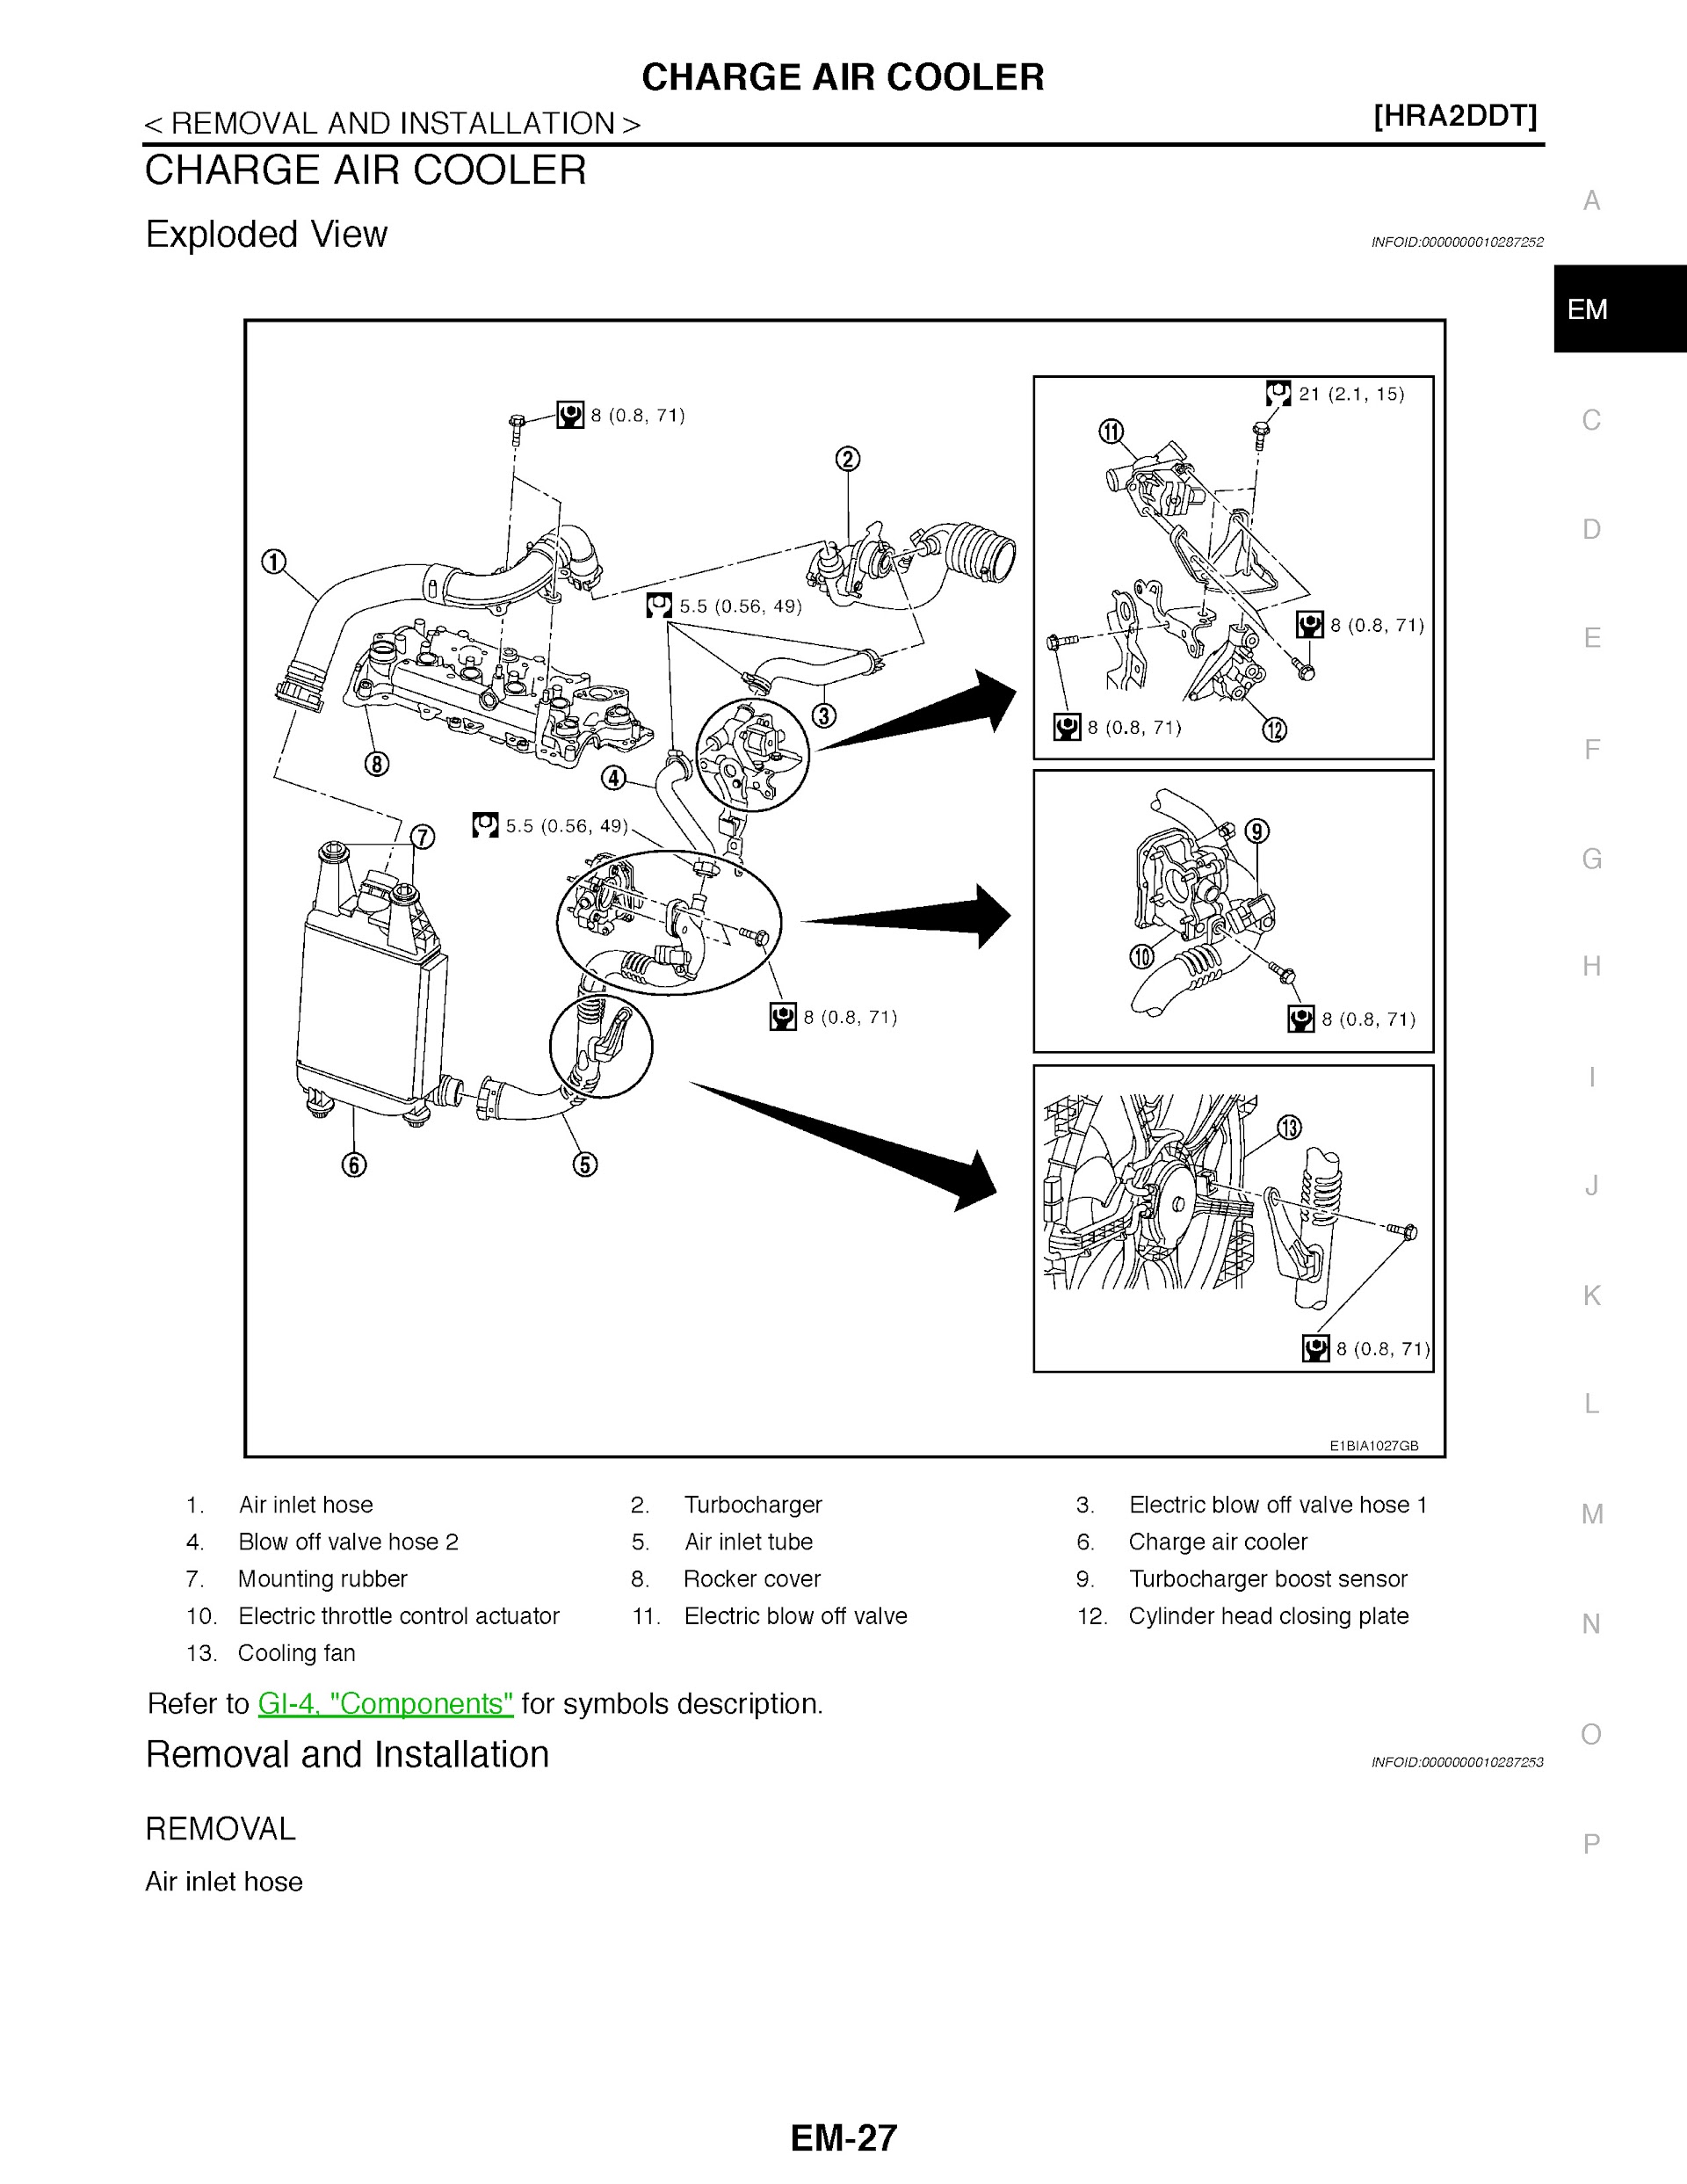 Download 2011-2014 Nissan Qashqai Service Repair Manual.